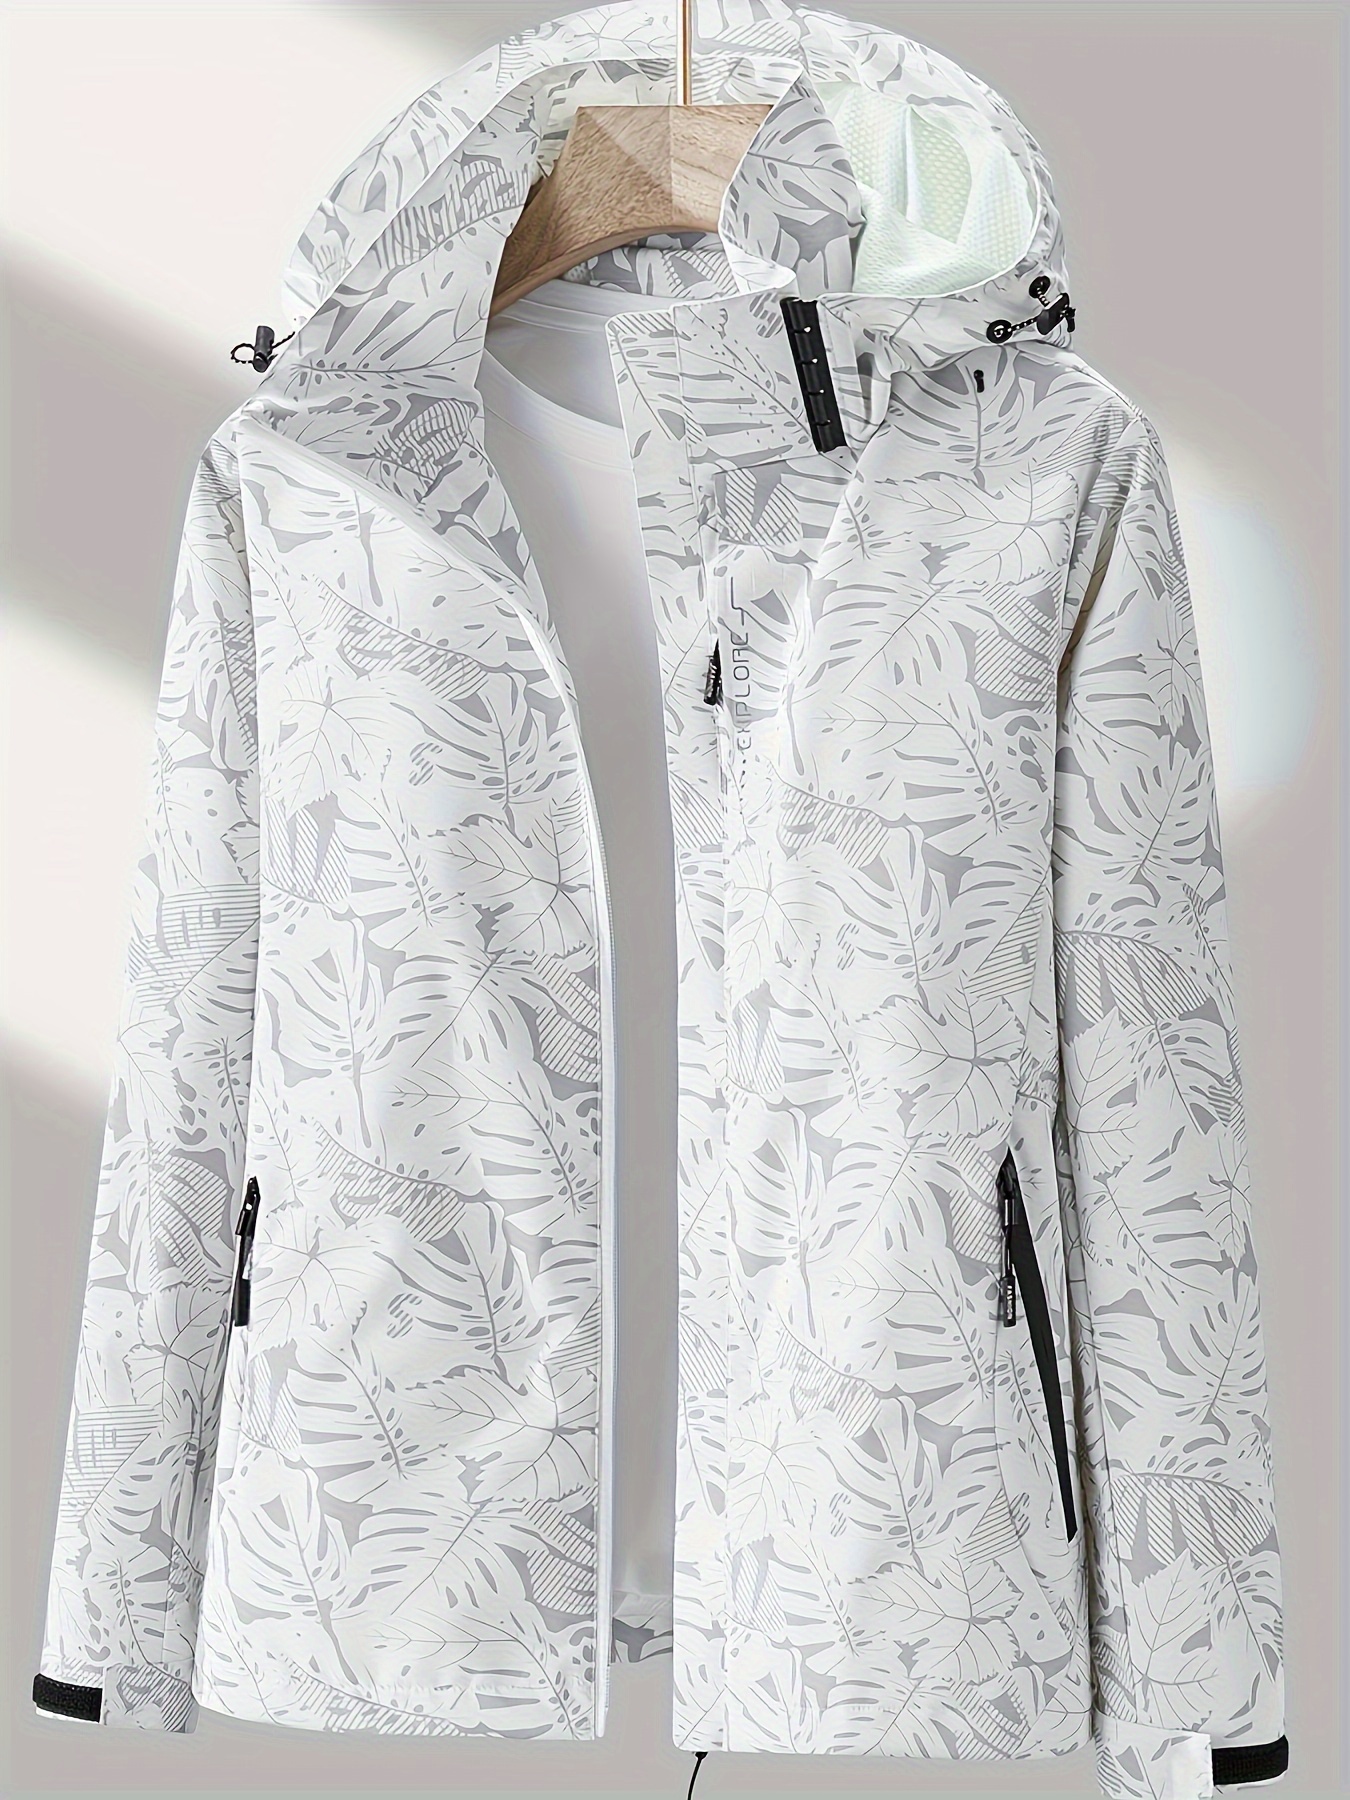 Женская камуфляжная куртка для активного отдыха: ветрозащитная и непромокаемая, со съемным капюшоном — идеально подходит для приключений на природе!